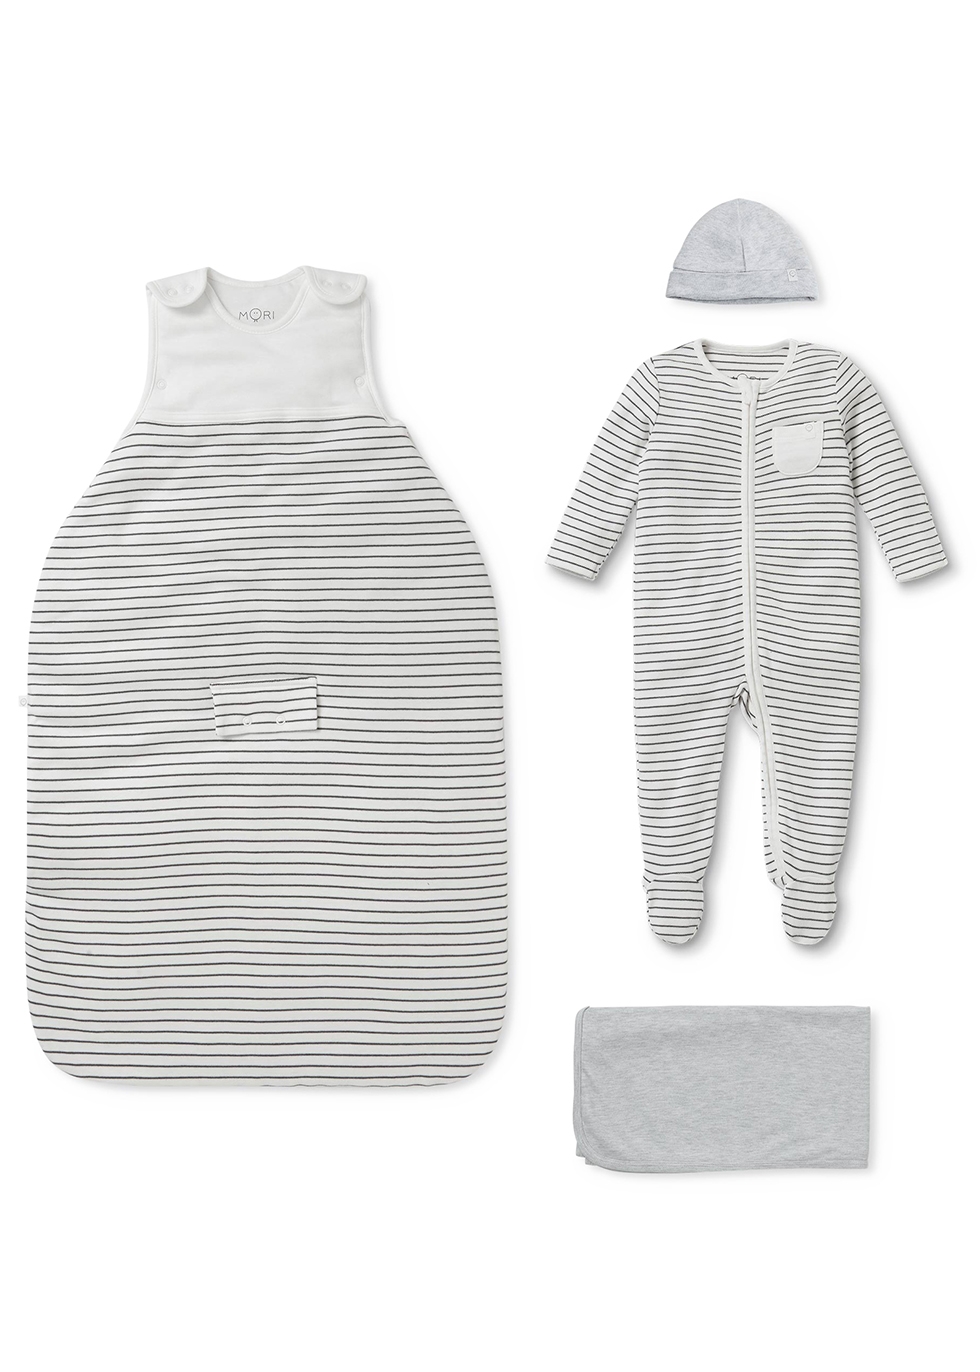 Mori Babies' Summer Clever Striped Jersey Sleep Set